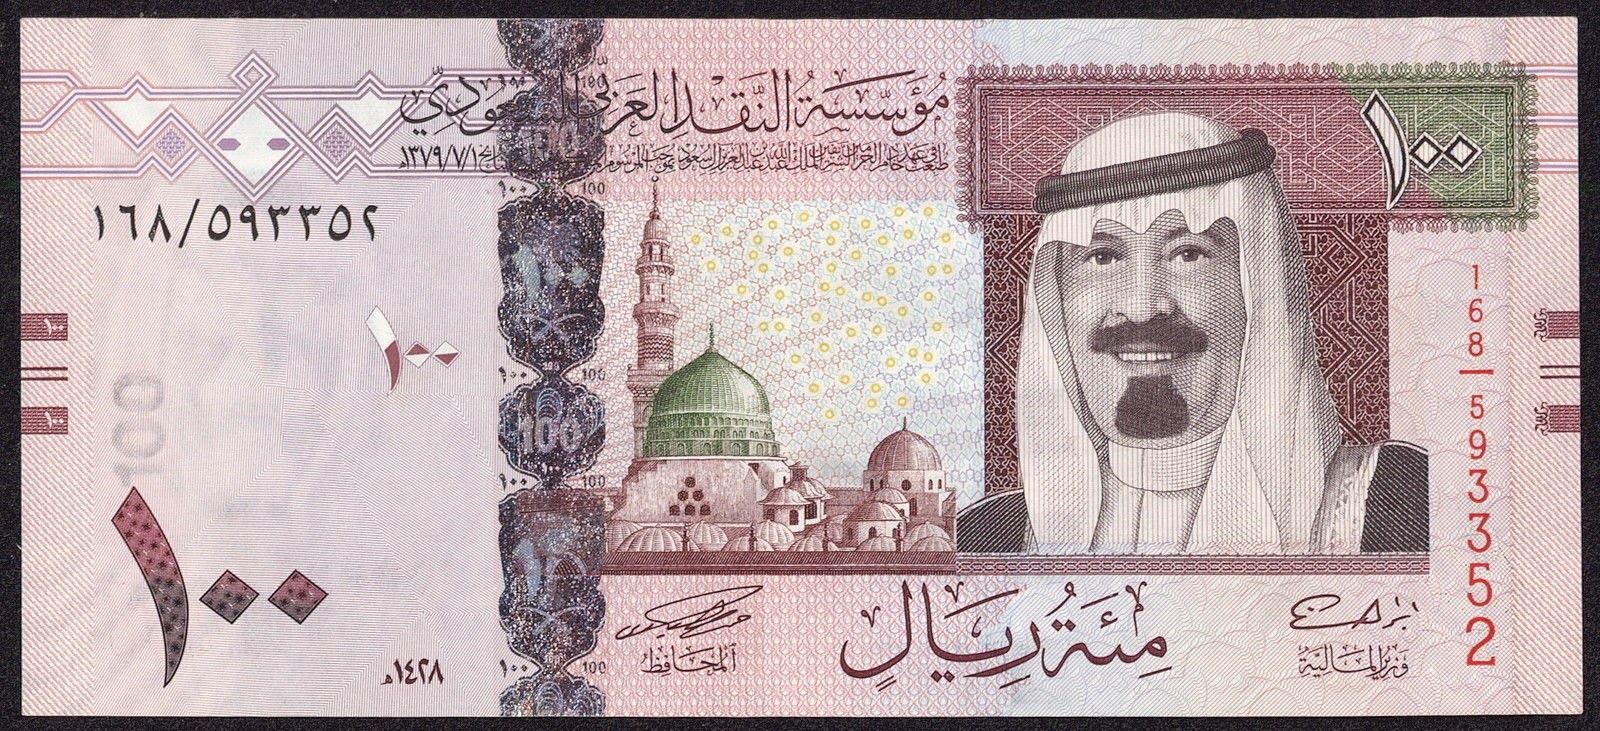 سعر الريال السعودي اليوم السبت 25/1/2020 في البنوك المختلفة مقابل الجنيه المصري